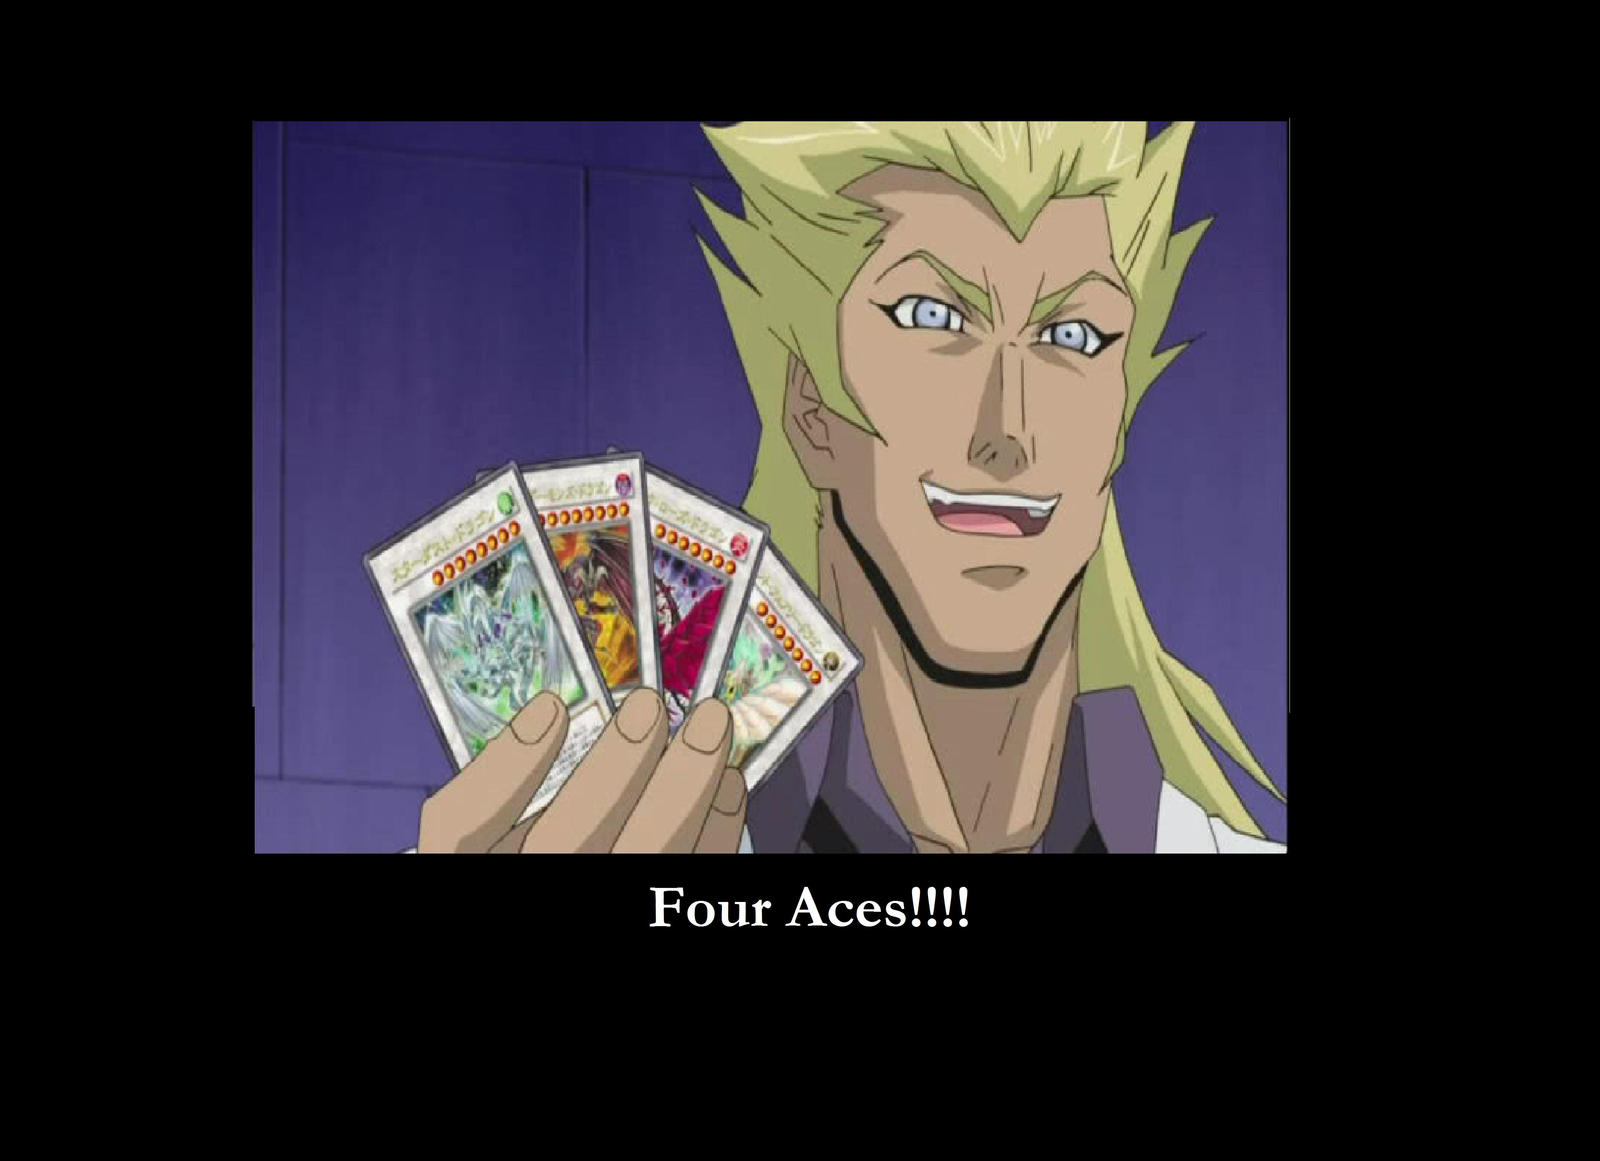 Rudger: Four aces